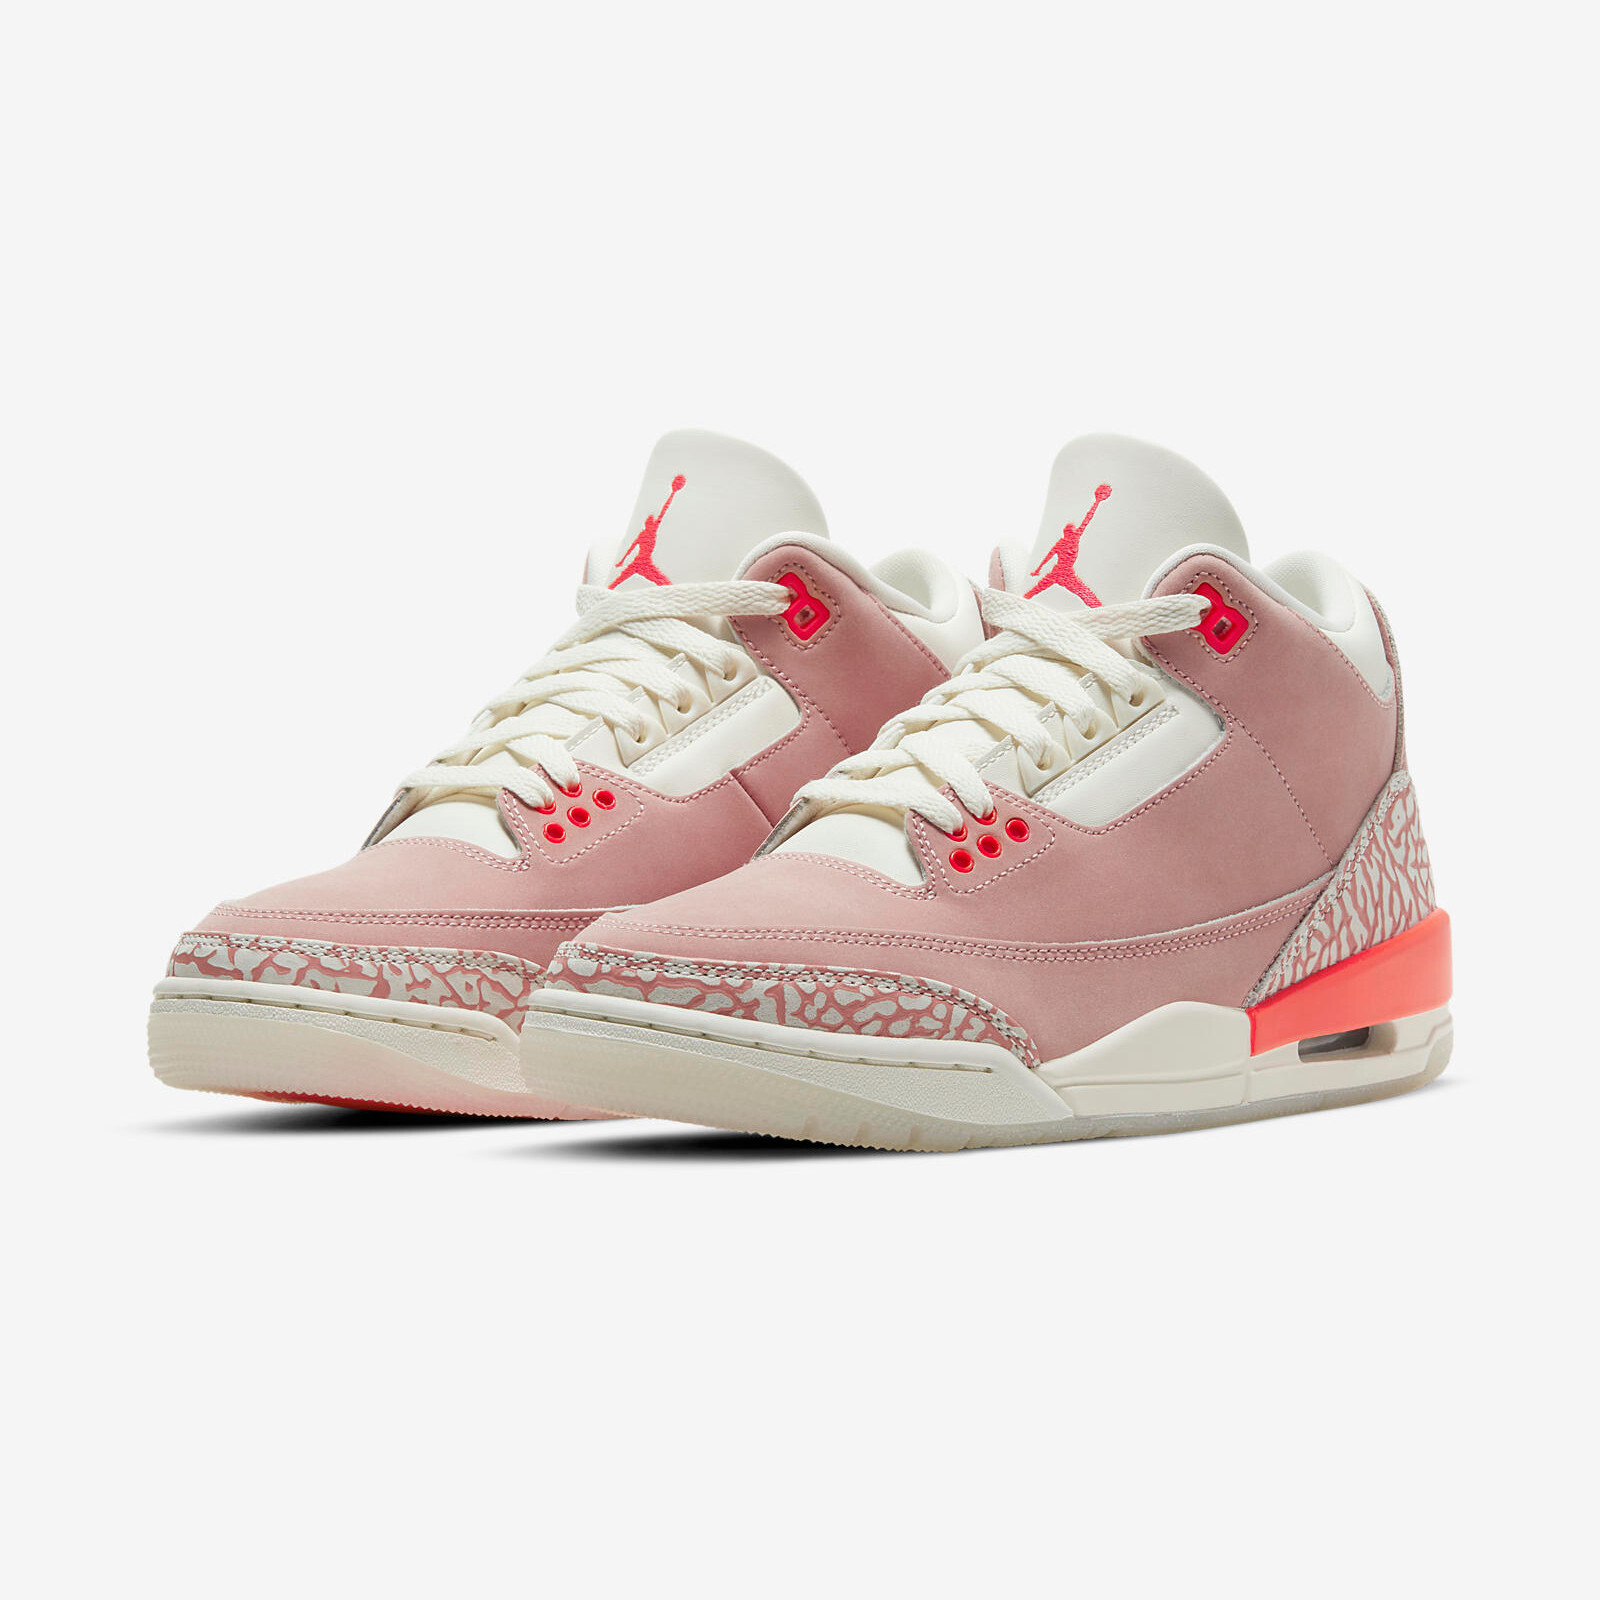 Air Jordan 3 Retro
« Rust Pink »